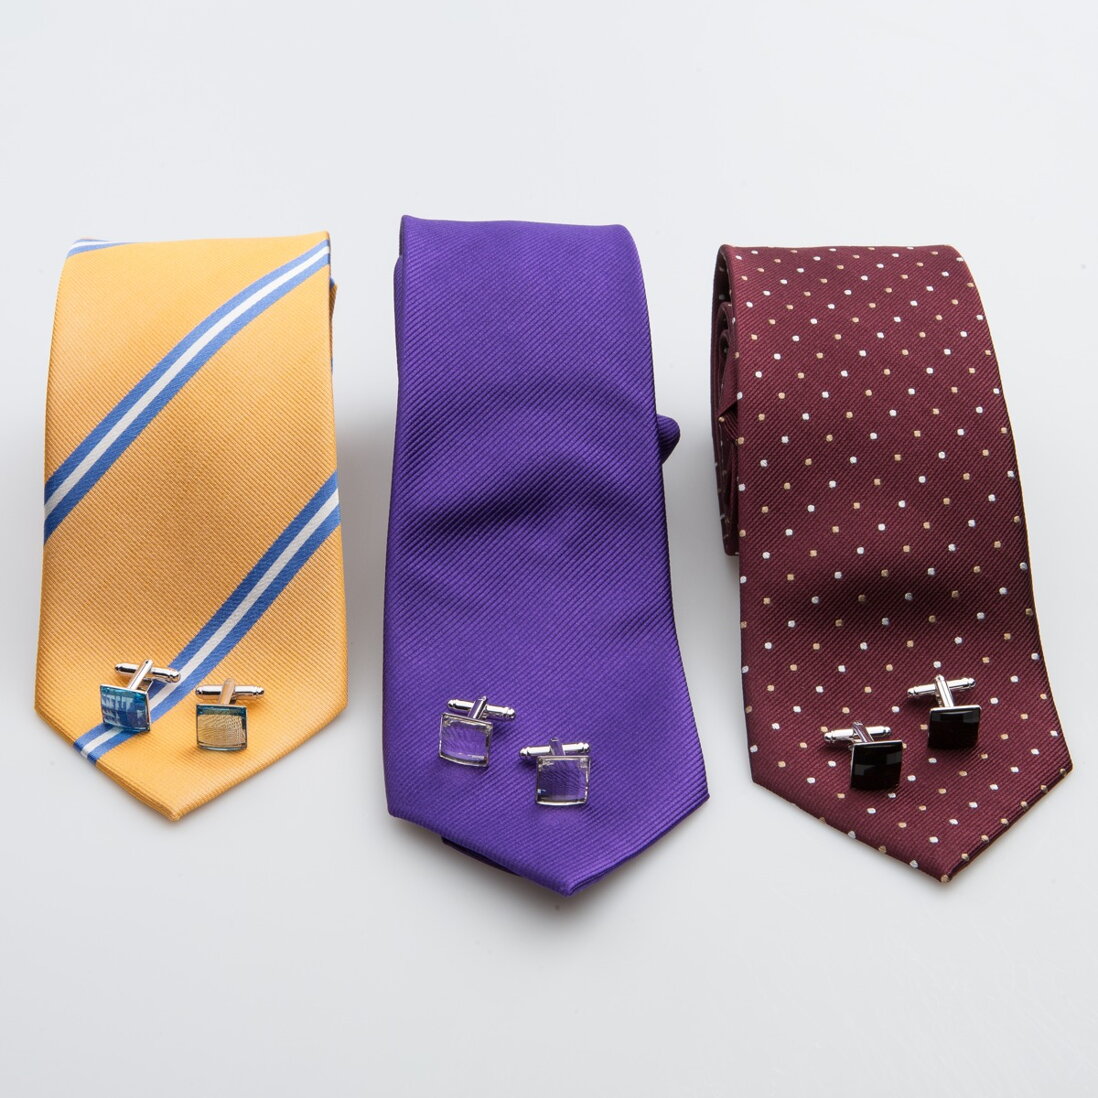 Pánsku kravatu možno nosiť aj dobrovoľne